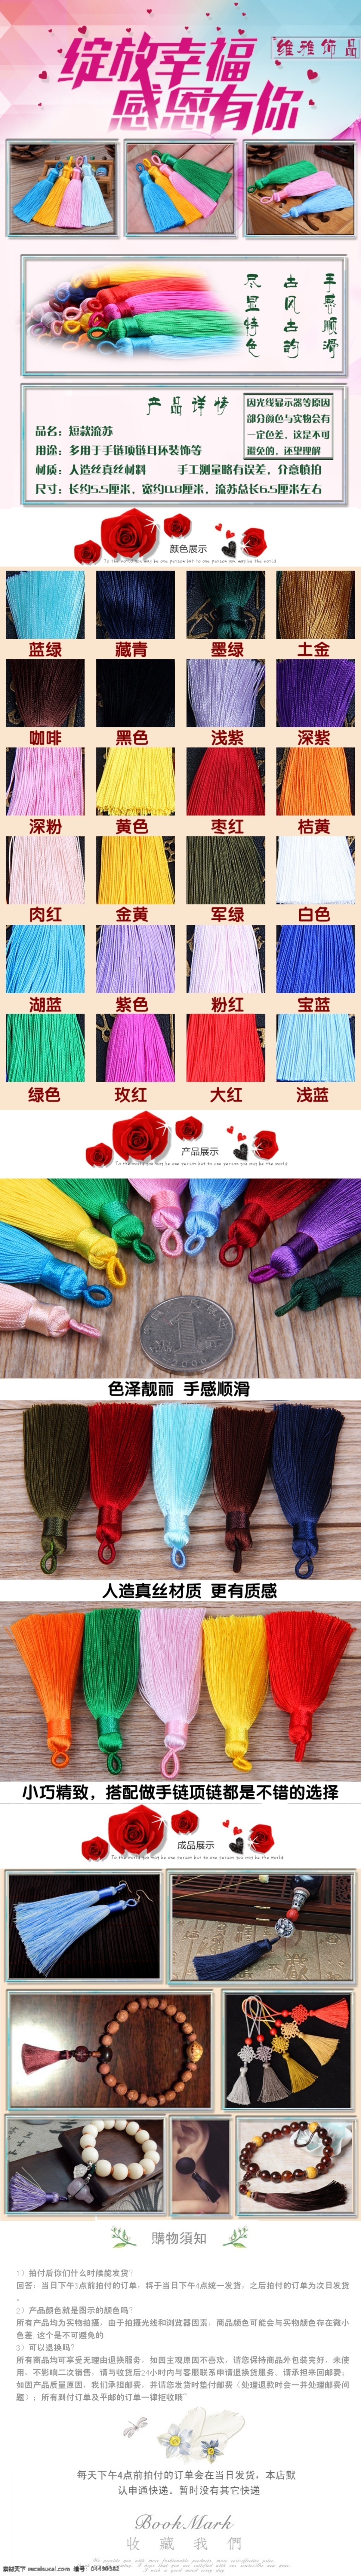 流苏穗子模板 饰品配件 中国结 流苏穗子 产品描述 模板